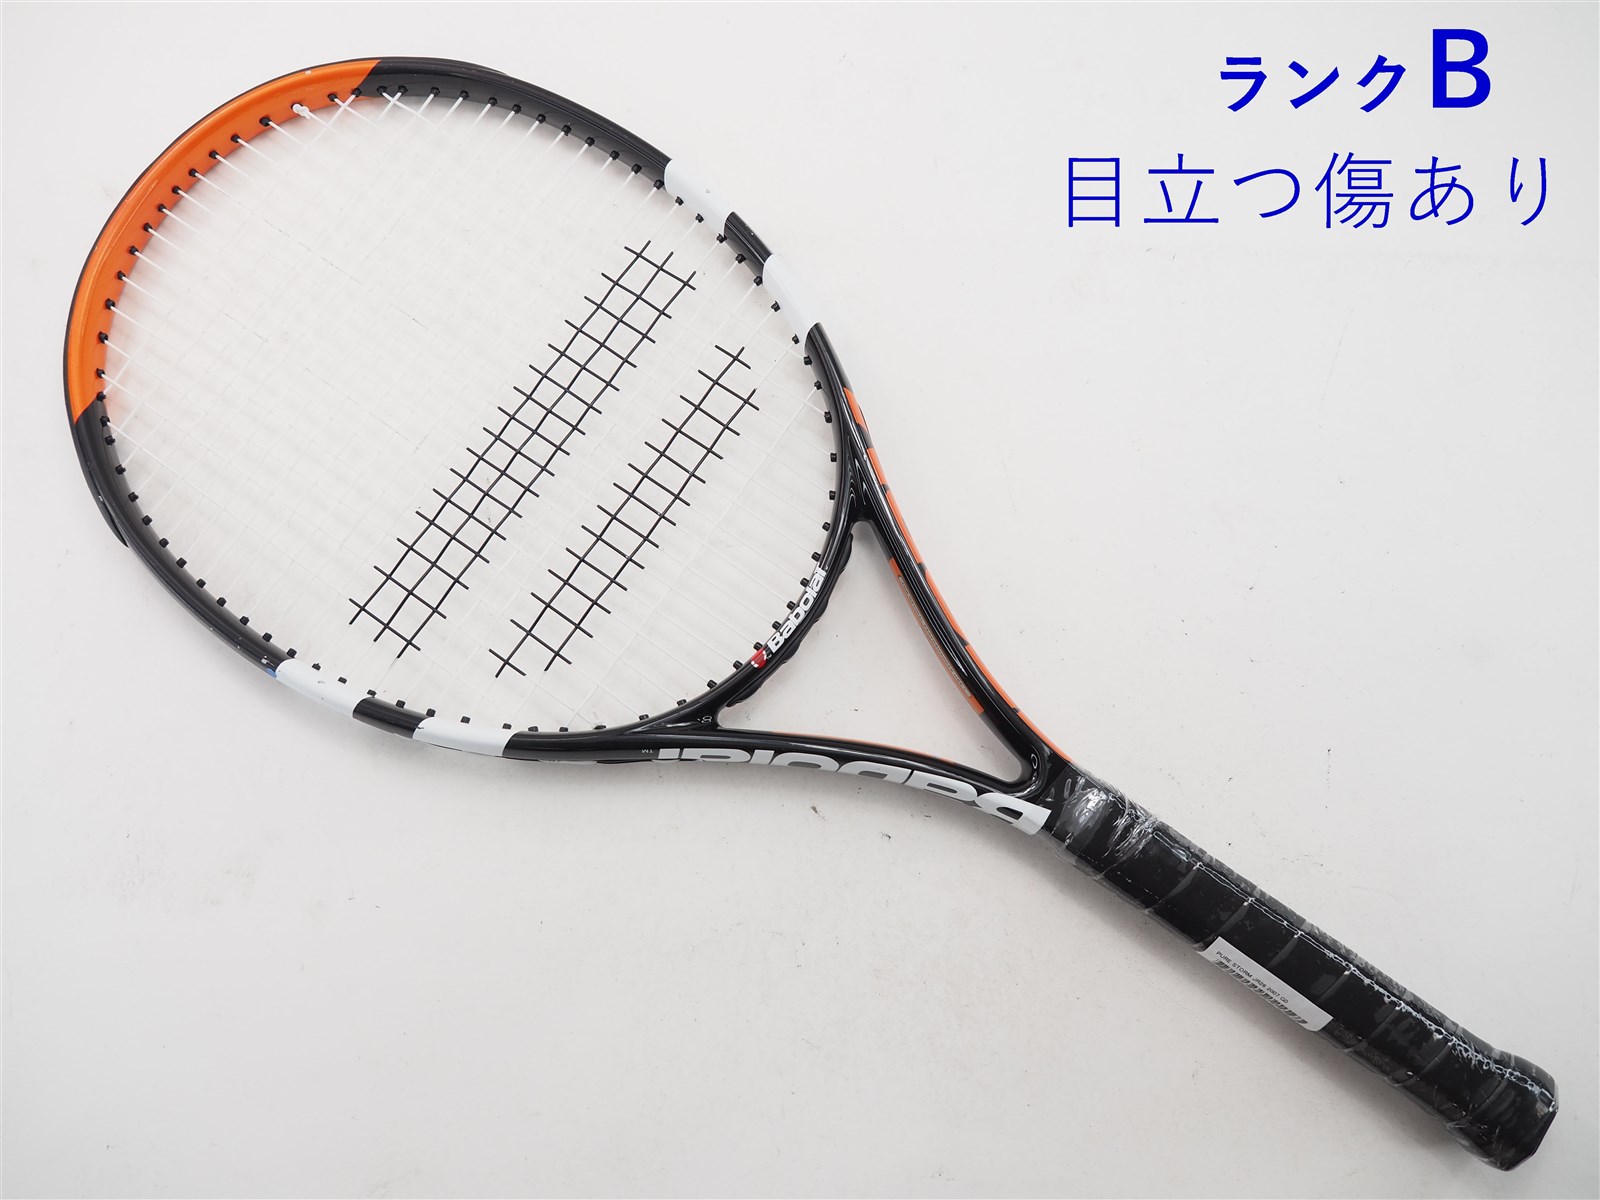 PURE STORM Babolat バボラ ピュアストーム テニスラケット - ラケット 